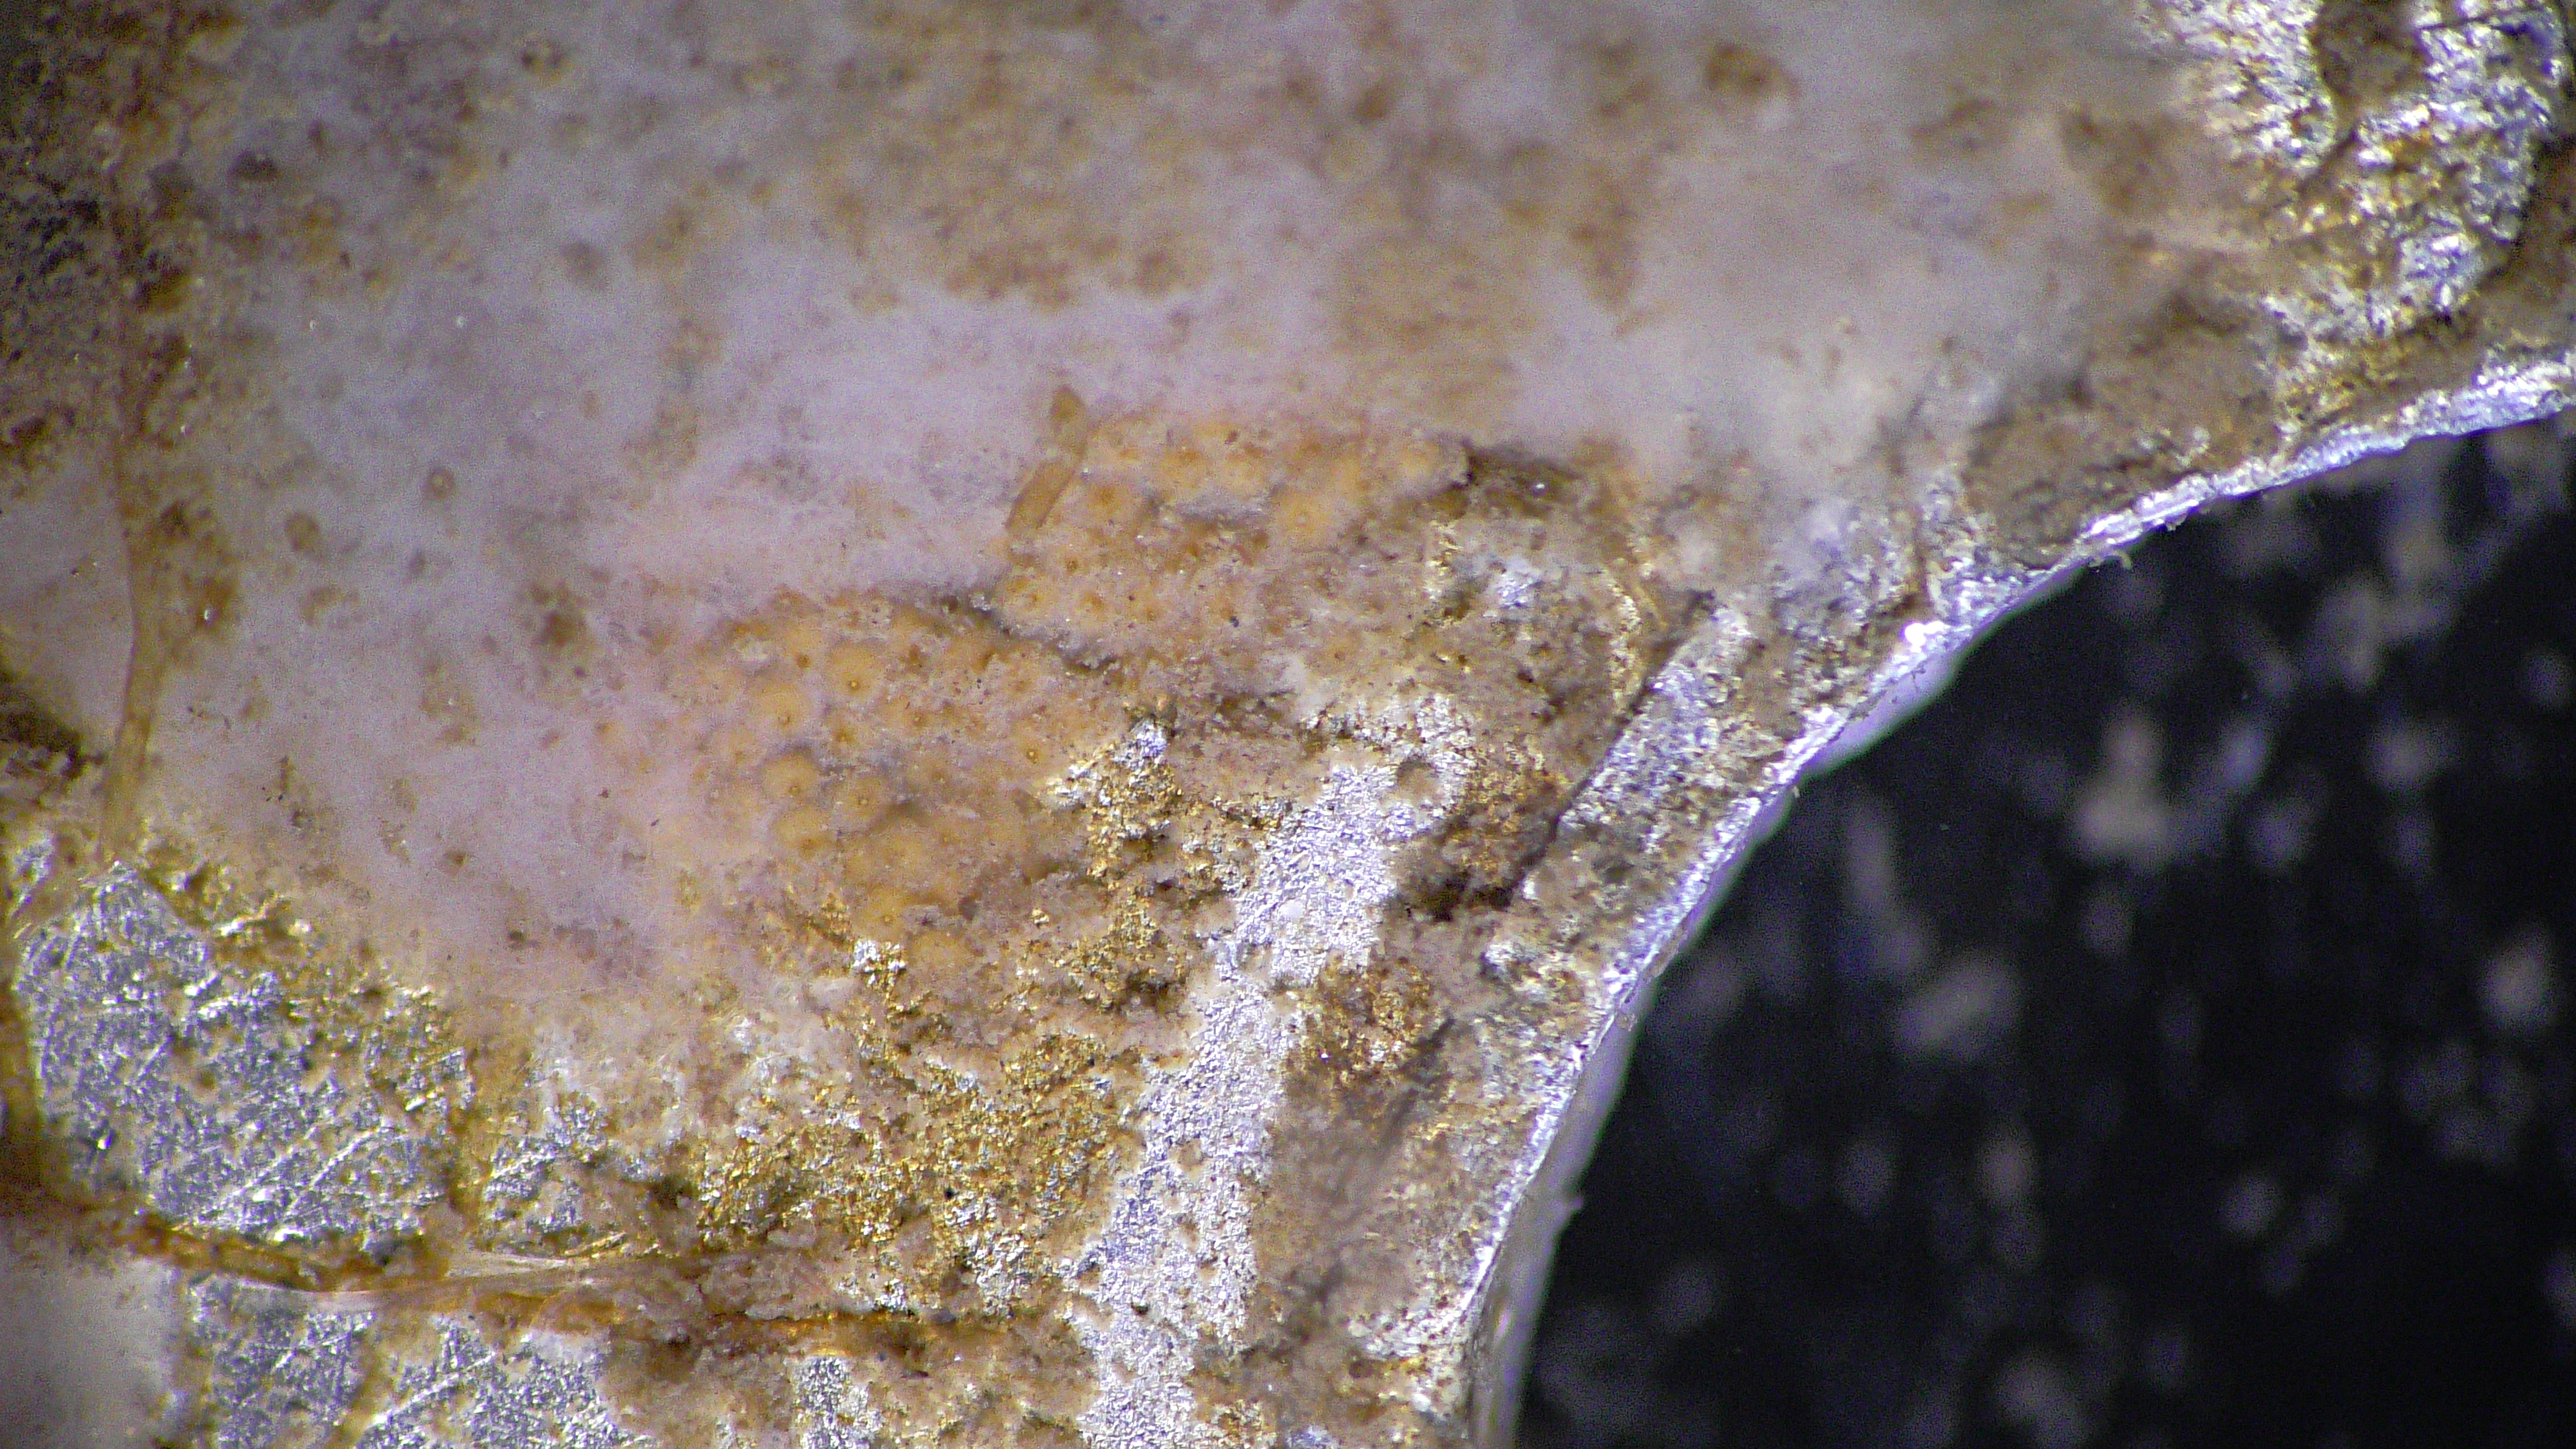 Freshwater Sponge as a white foam-like field spread on the inside section of a biodisc.